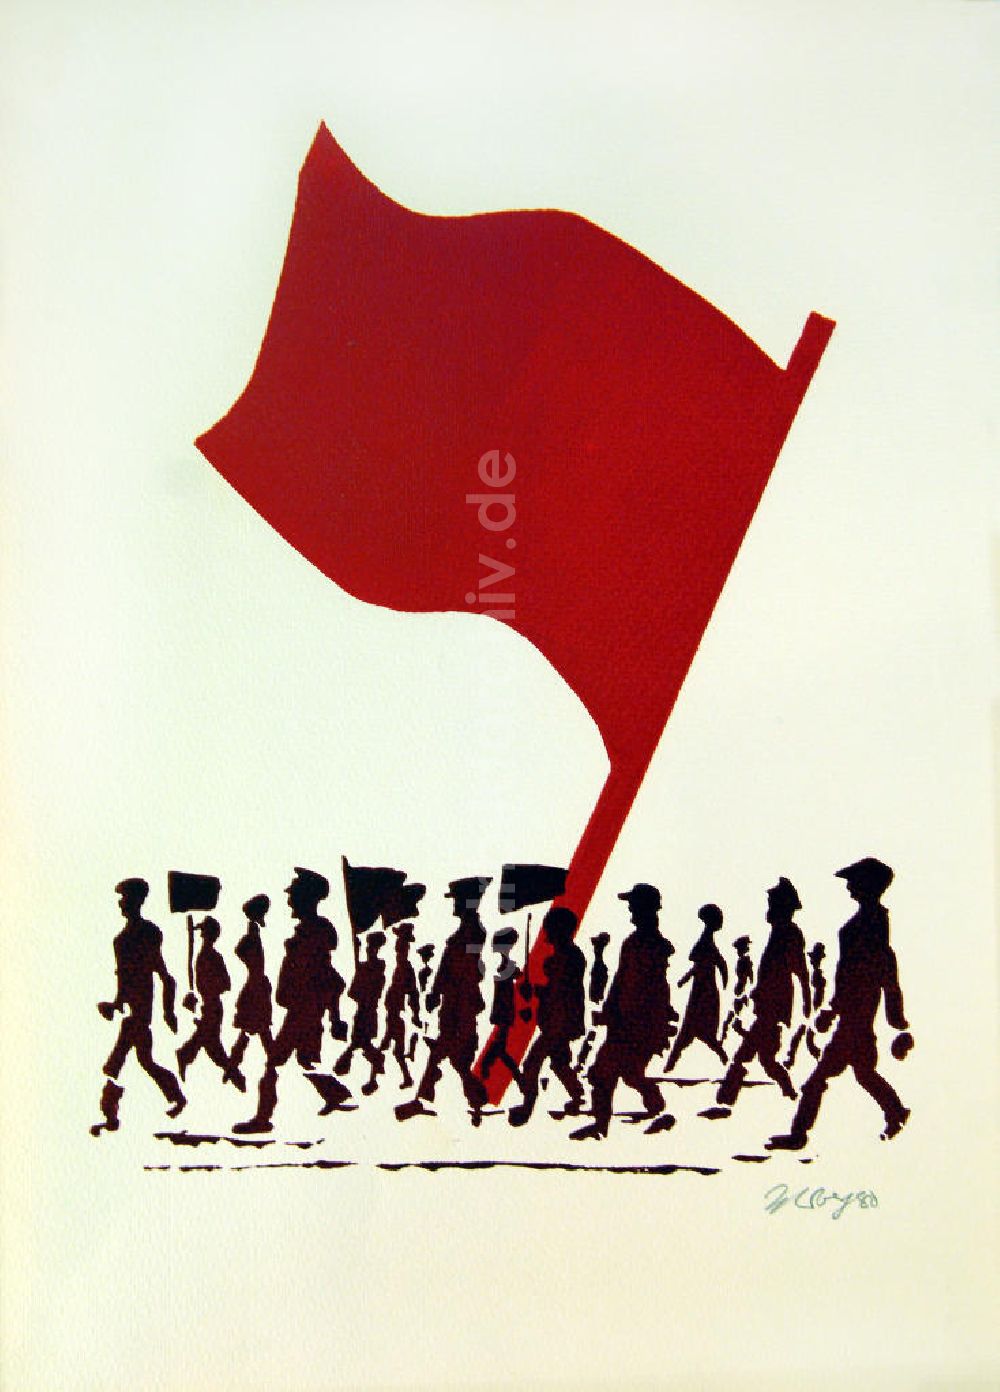 Berlin: Grafik von Herbert Sandberg Rote Fahne / Flagge aus dem Jahr 1980